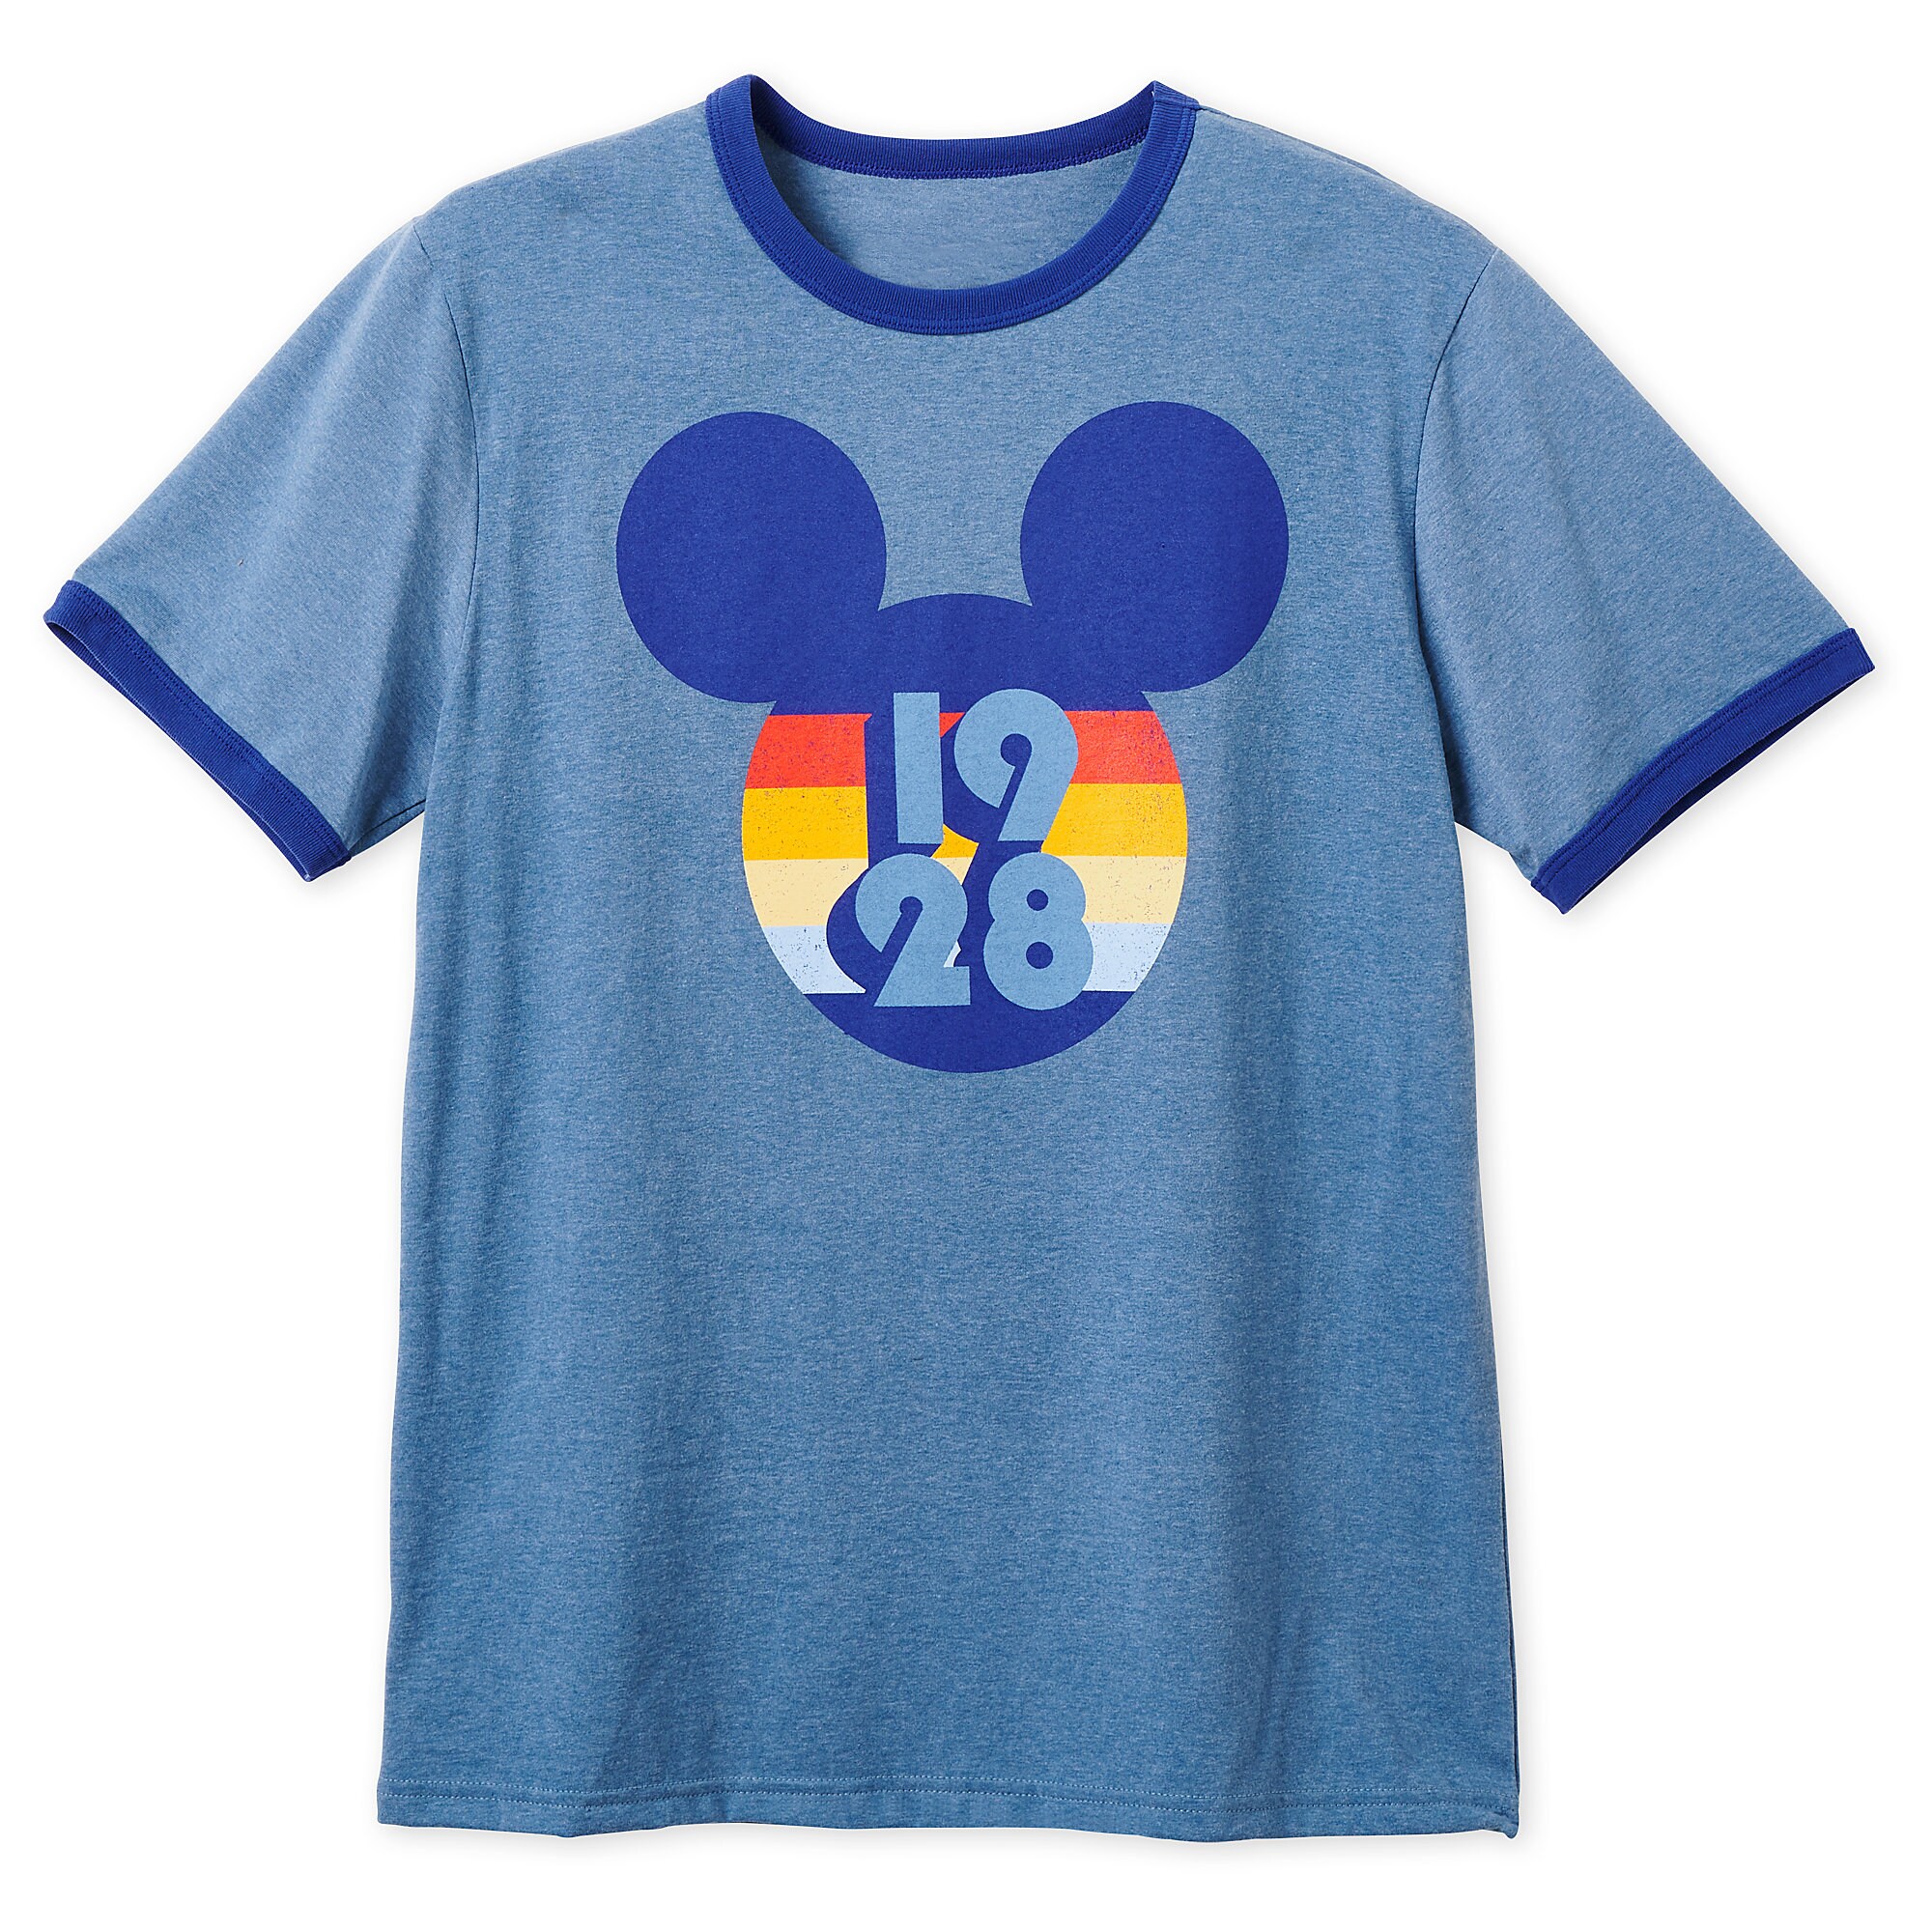 Mickey Mouse 1928 Ringer T-Shirt for Men